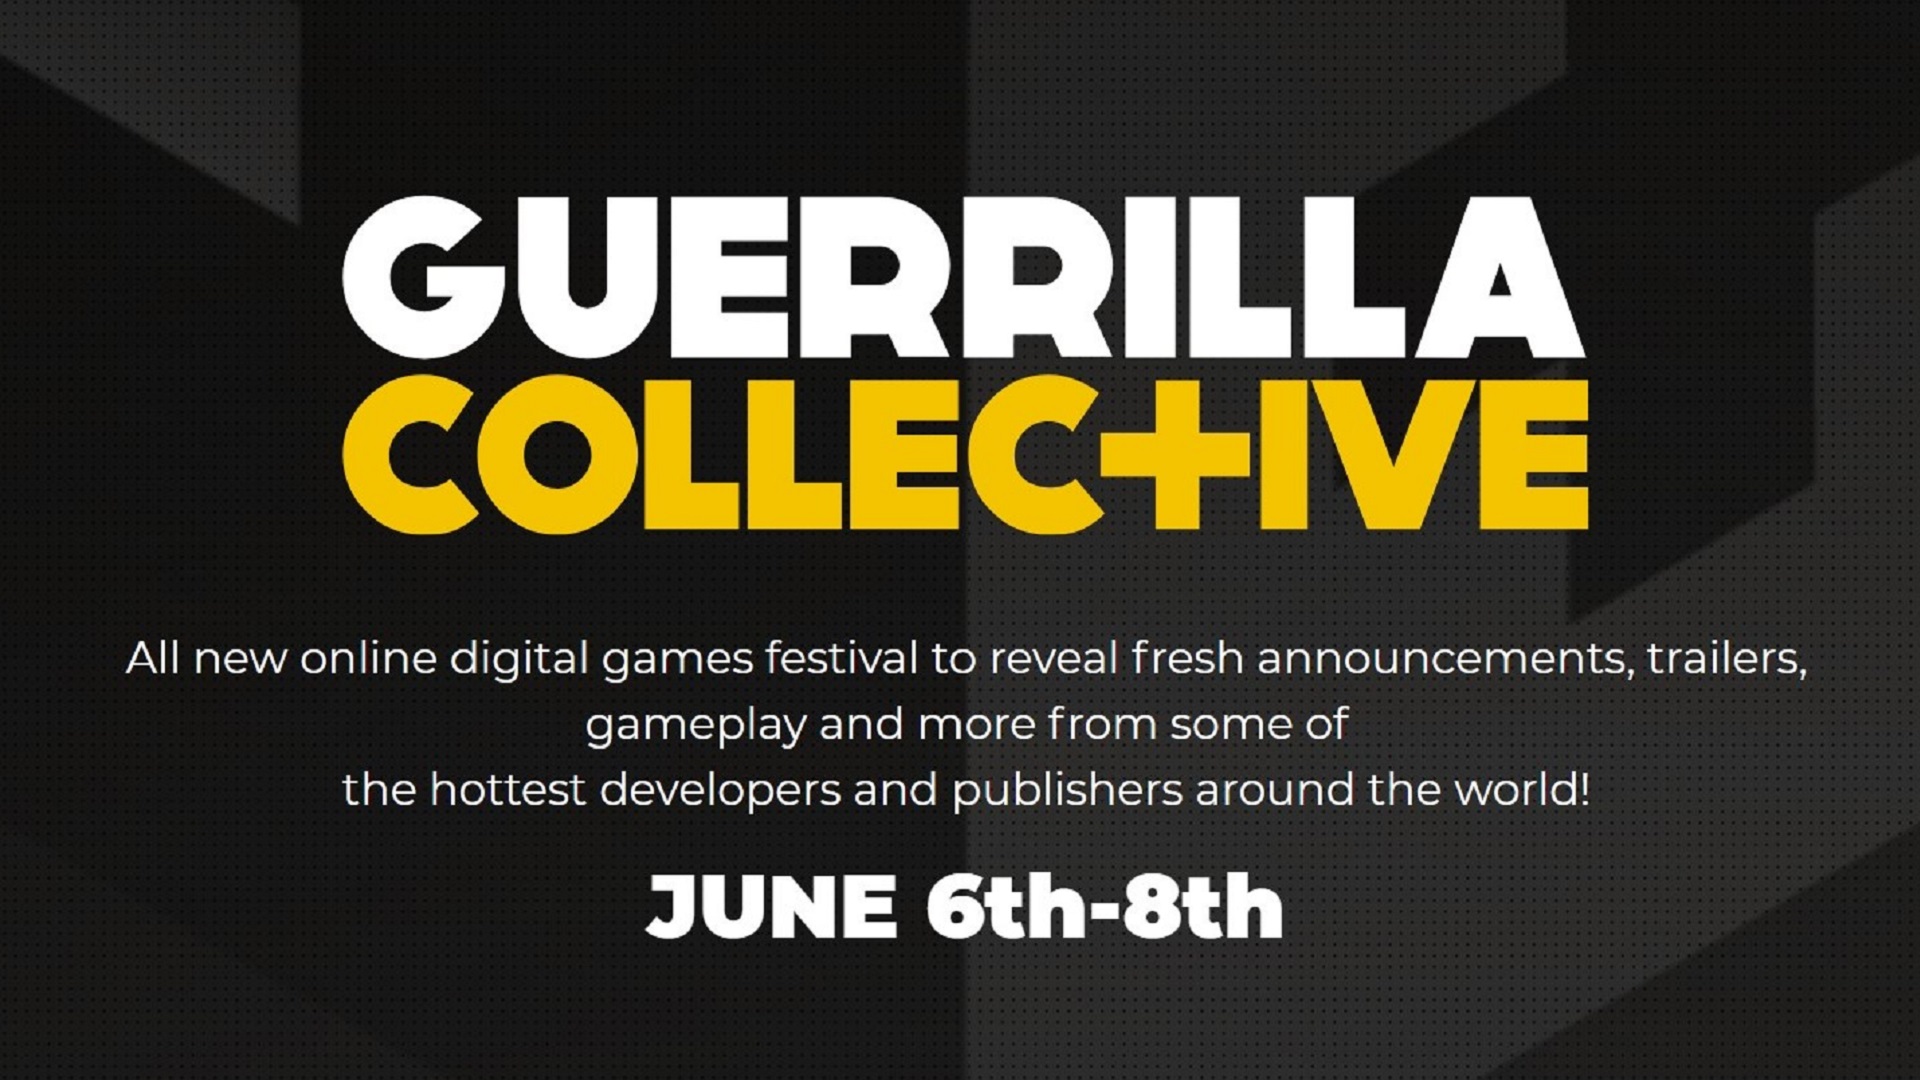 Guerrilla collective E3 digital event